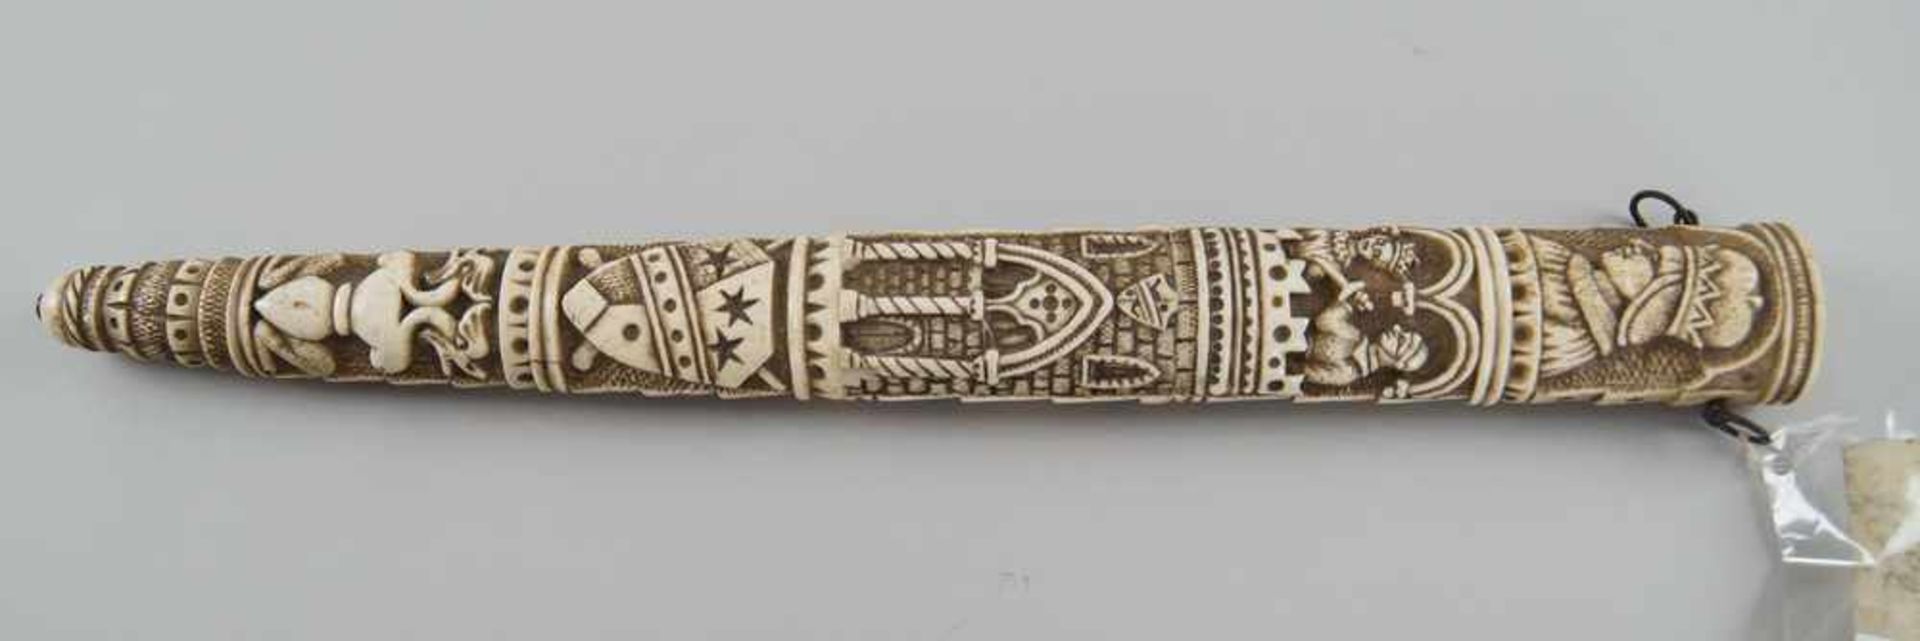 Schwert mit fein geschnitzter Scheide und Griff aus Elfenbein, Klinge aus Eisen, 19. JH,mit Zettel - Bild 10 aus 11